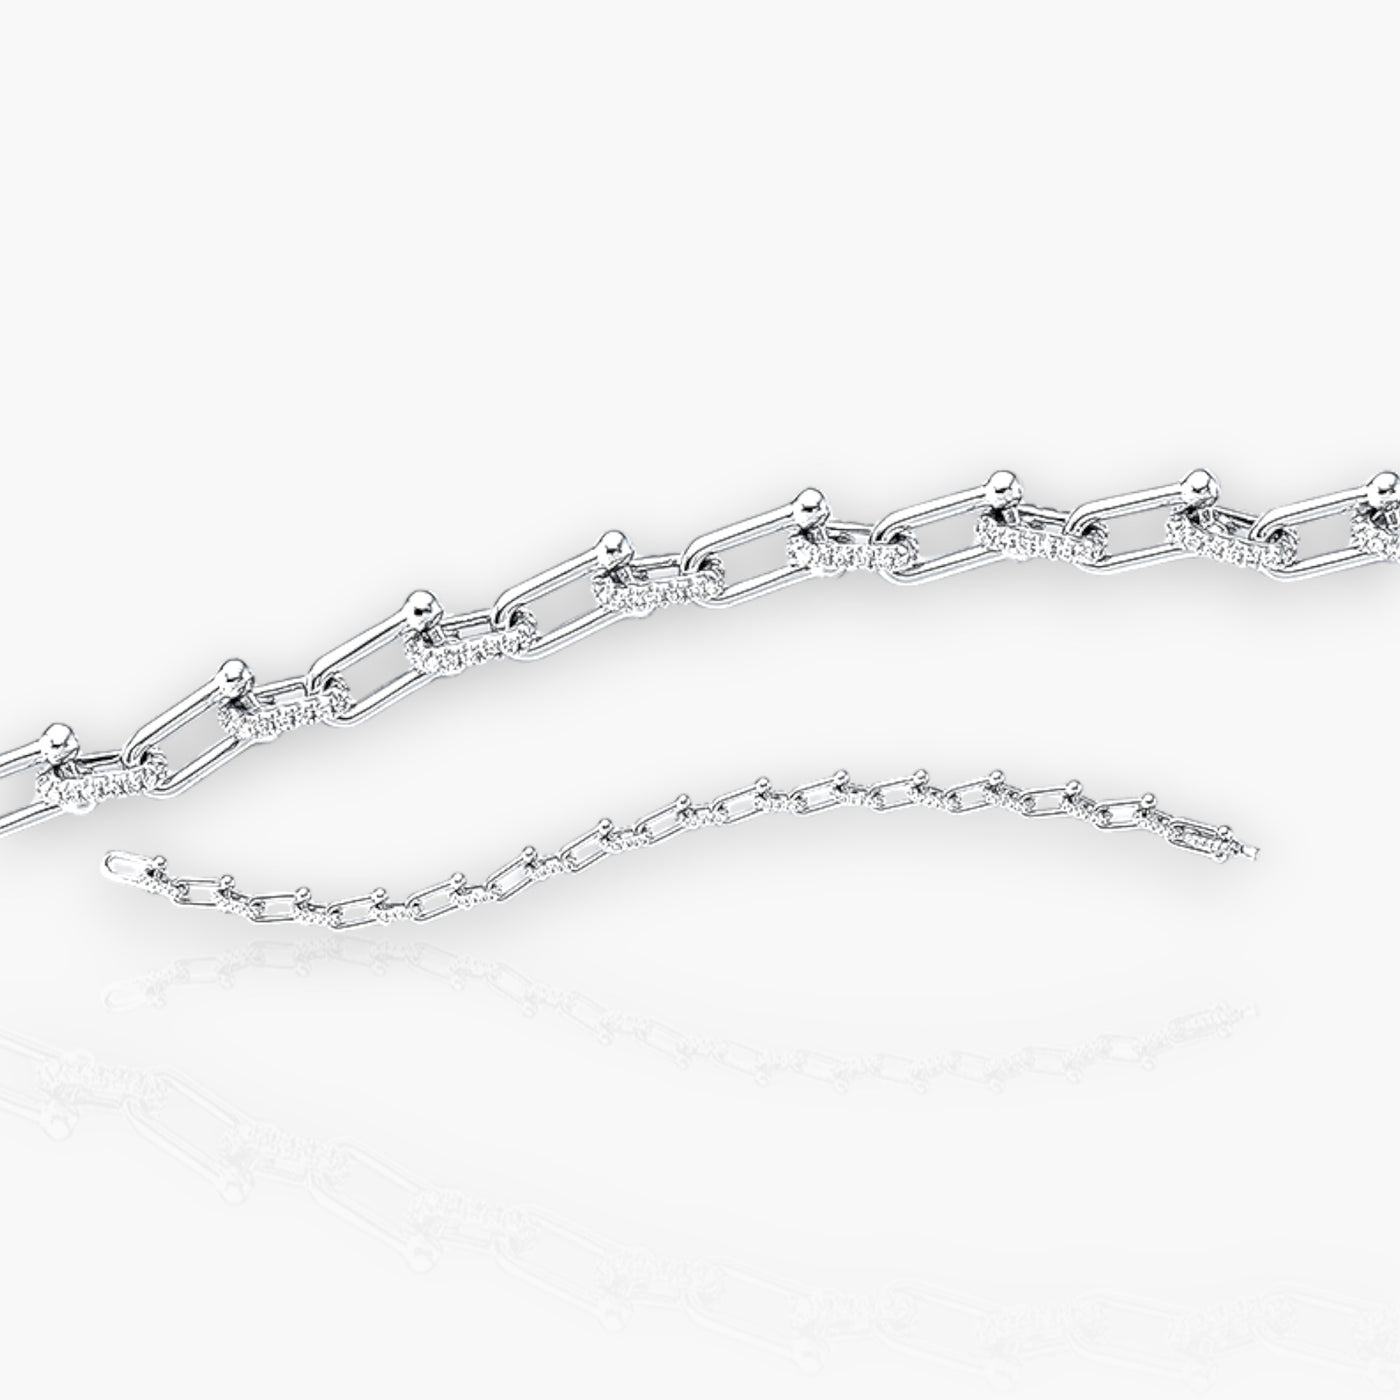 Chain Bracelet with 264 Diamonds - Moregola Fine Jewelry